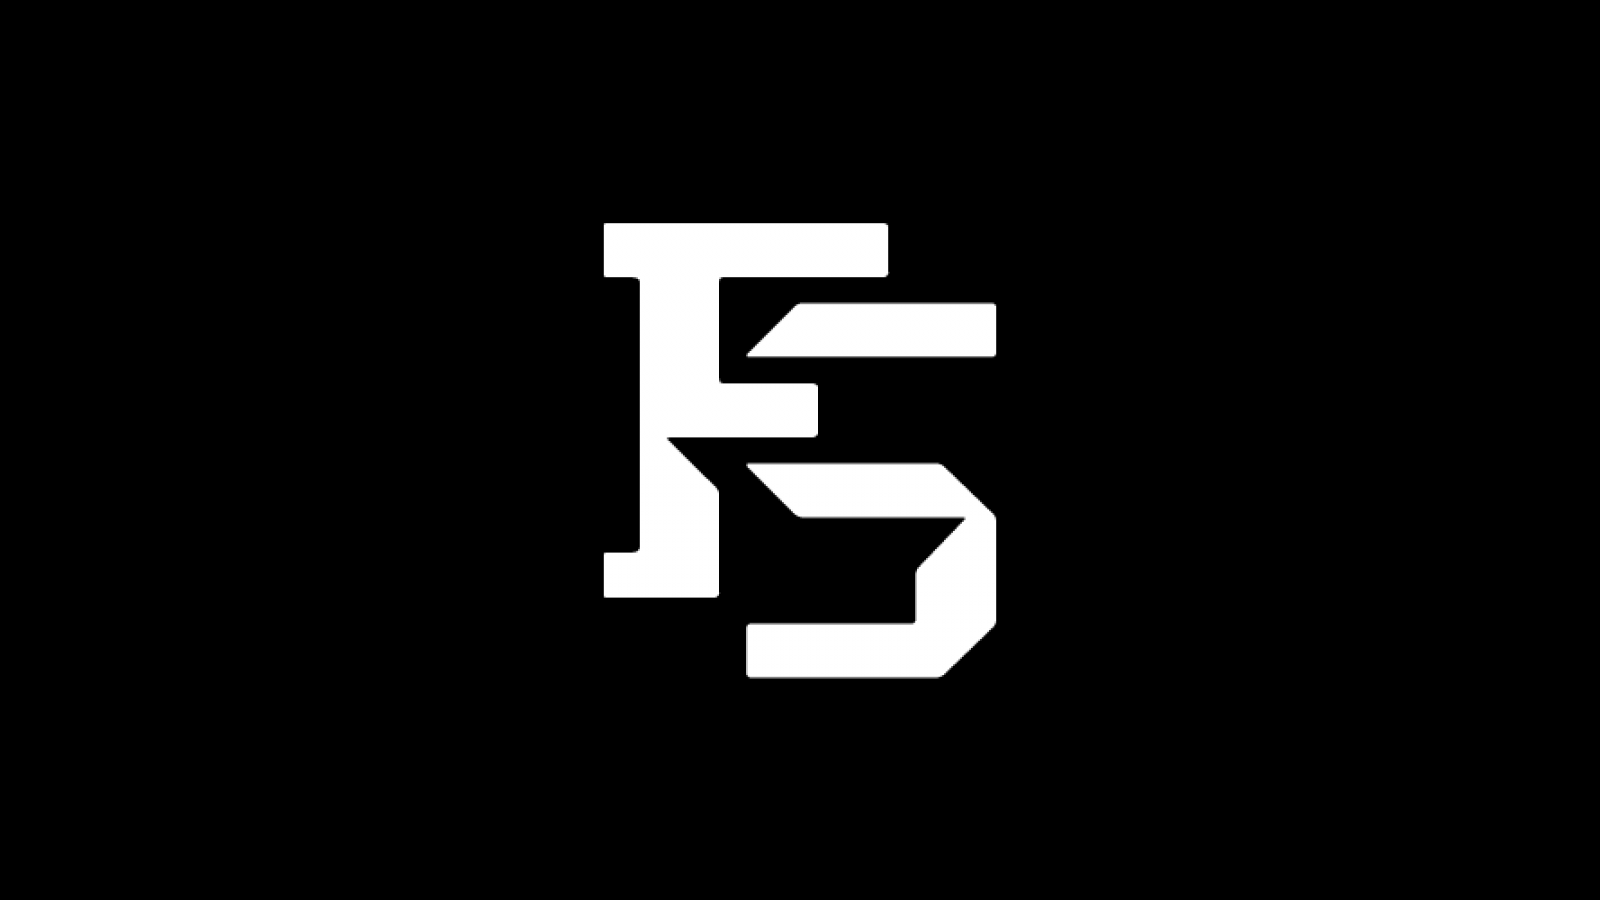 Лого FS. Логотип с буквами FS. Картинка FS. Буква s + f. S f слово